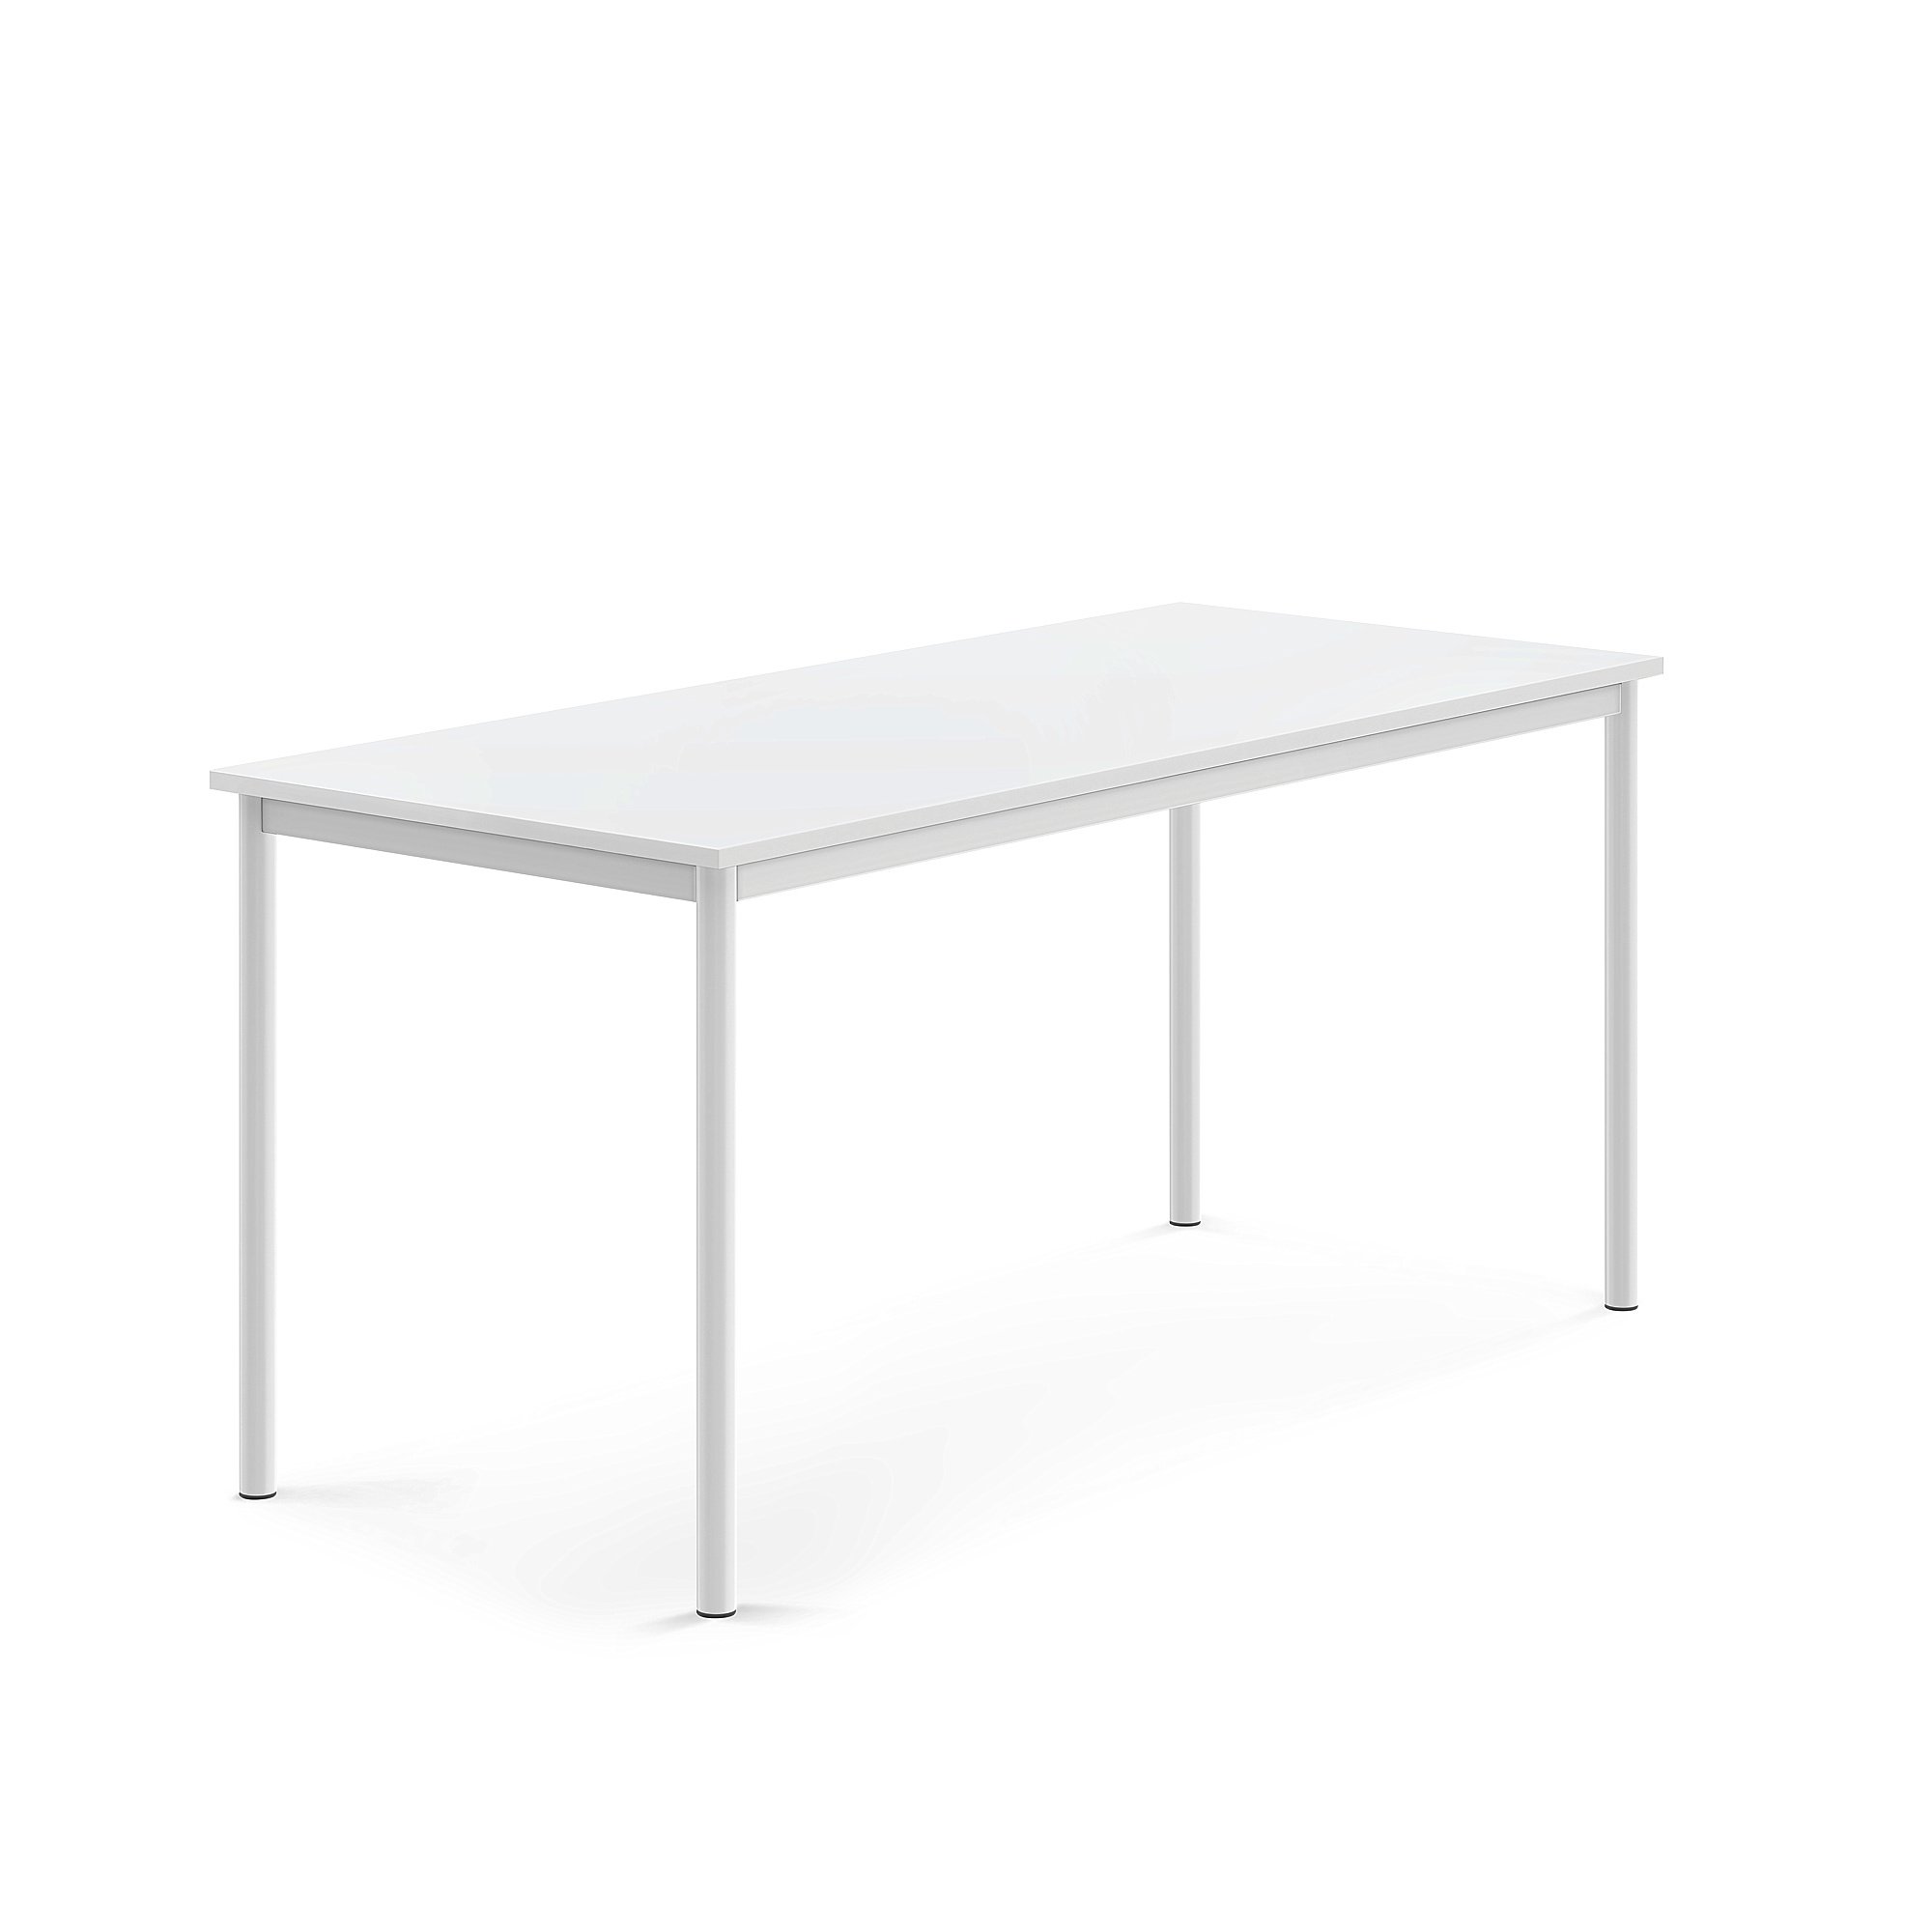 Stůl BORÅS, 1600x700x720 mm, bílé nohy, HPL deska, bílá